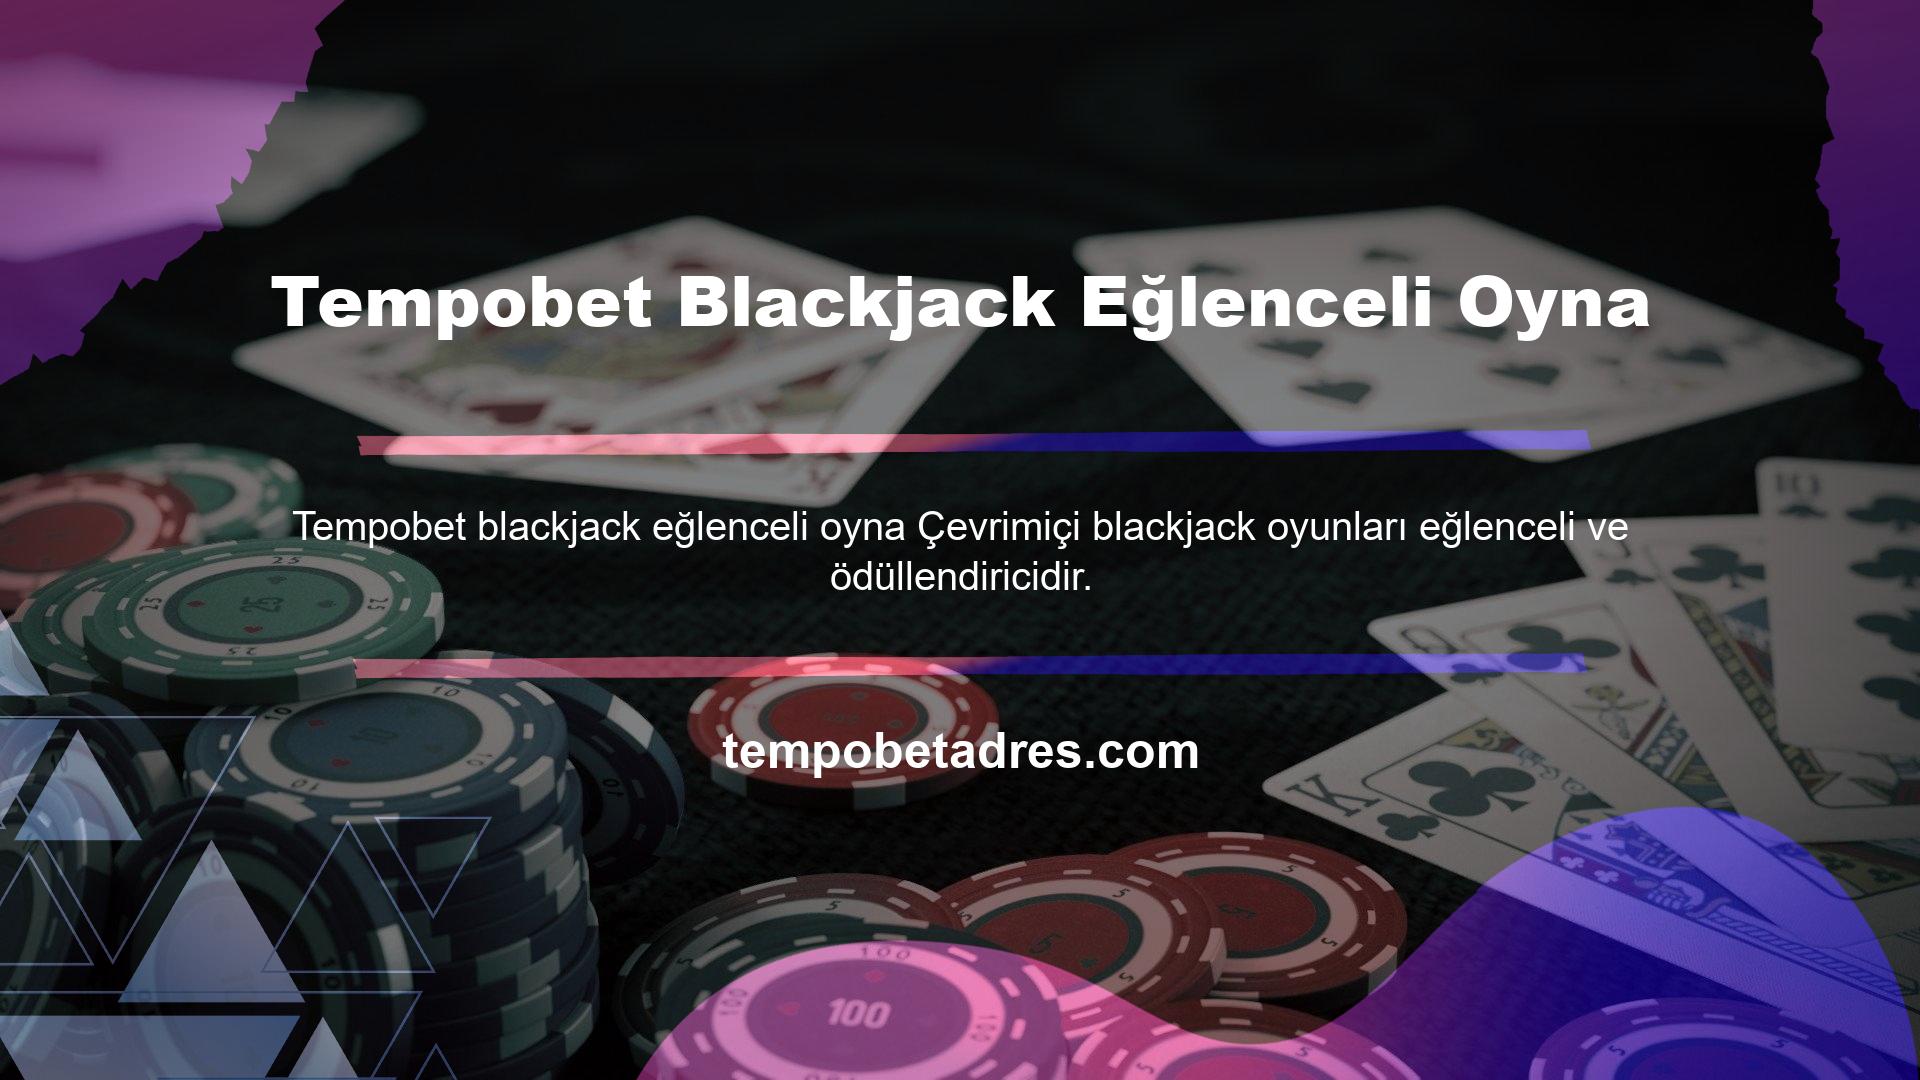 Sektördeki en iyi casino seçeneklerinden biri olan farklı blackjack seçenekleri bu adreste sizleri bekliyor